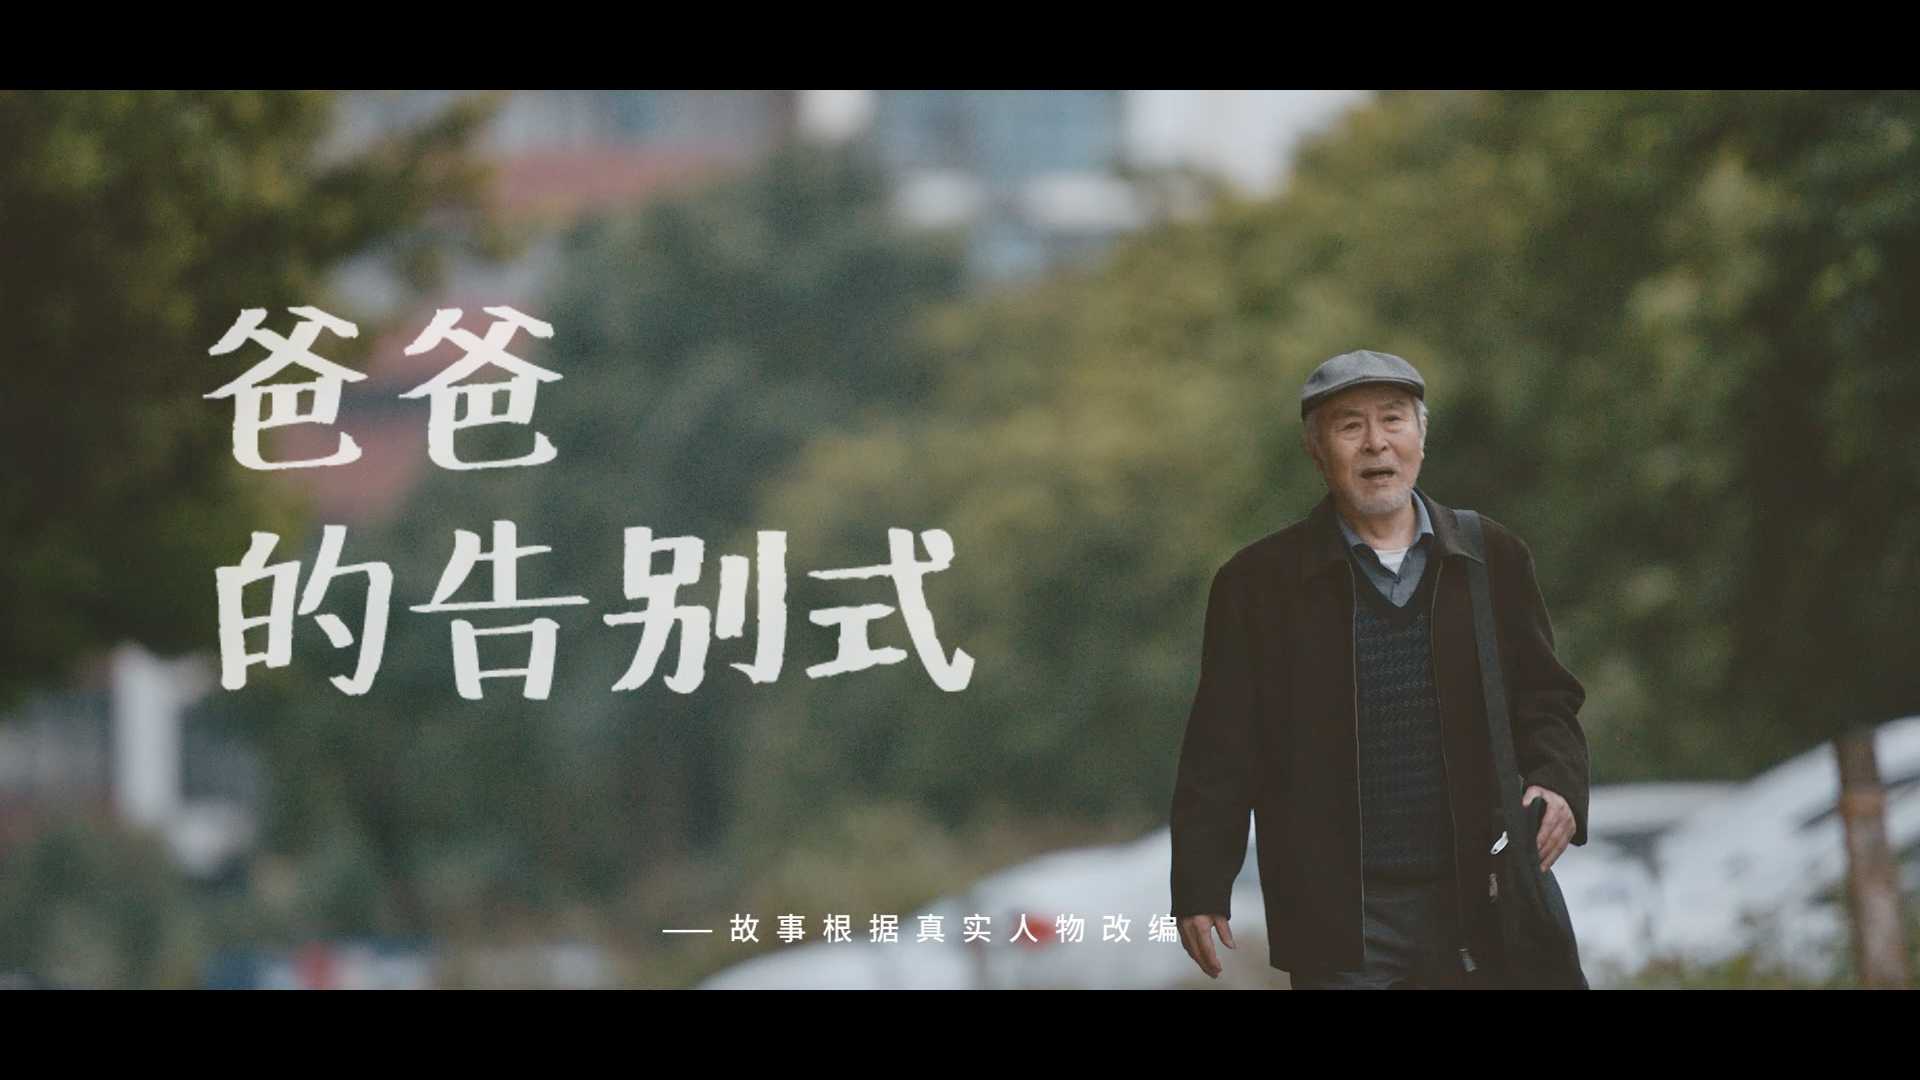 奈雪的茶广告微电影《爸爸的告别式》导演版